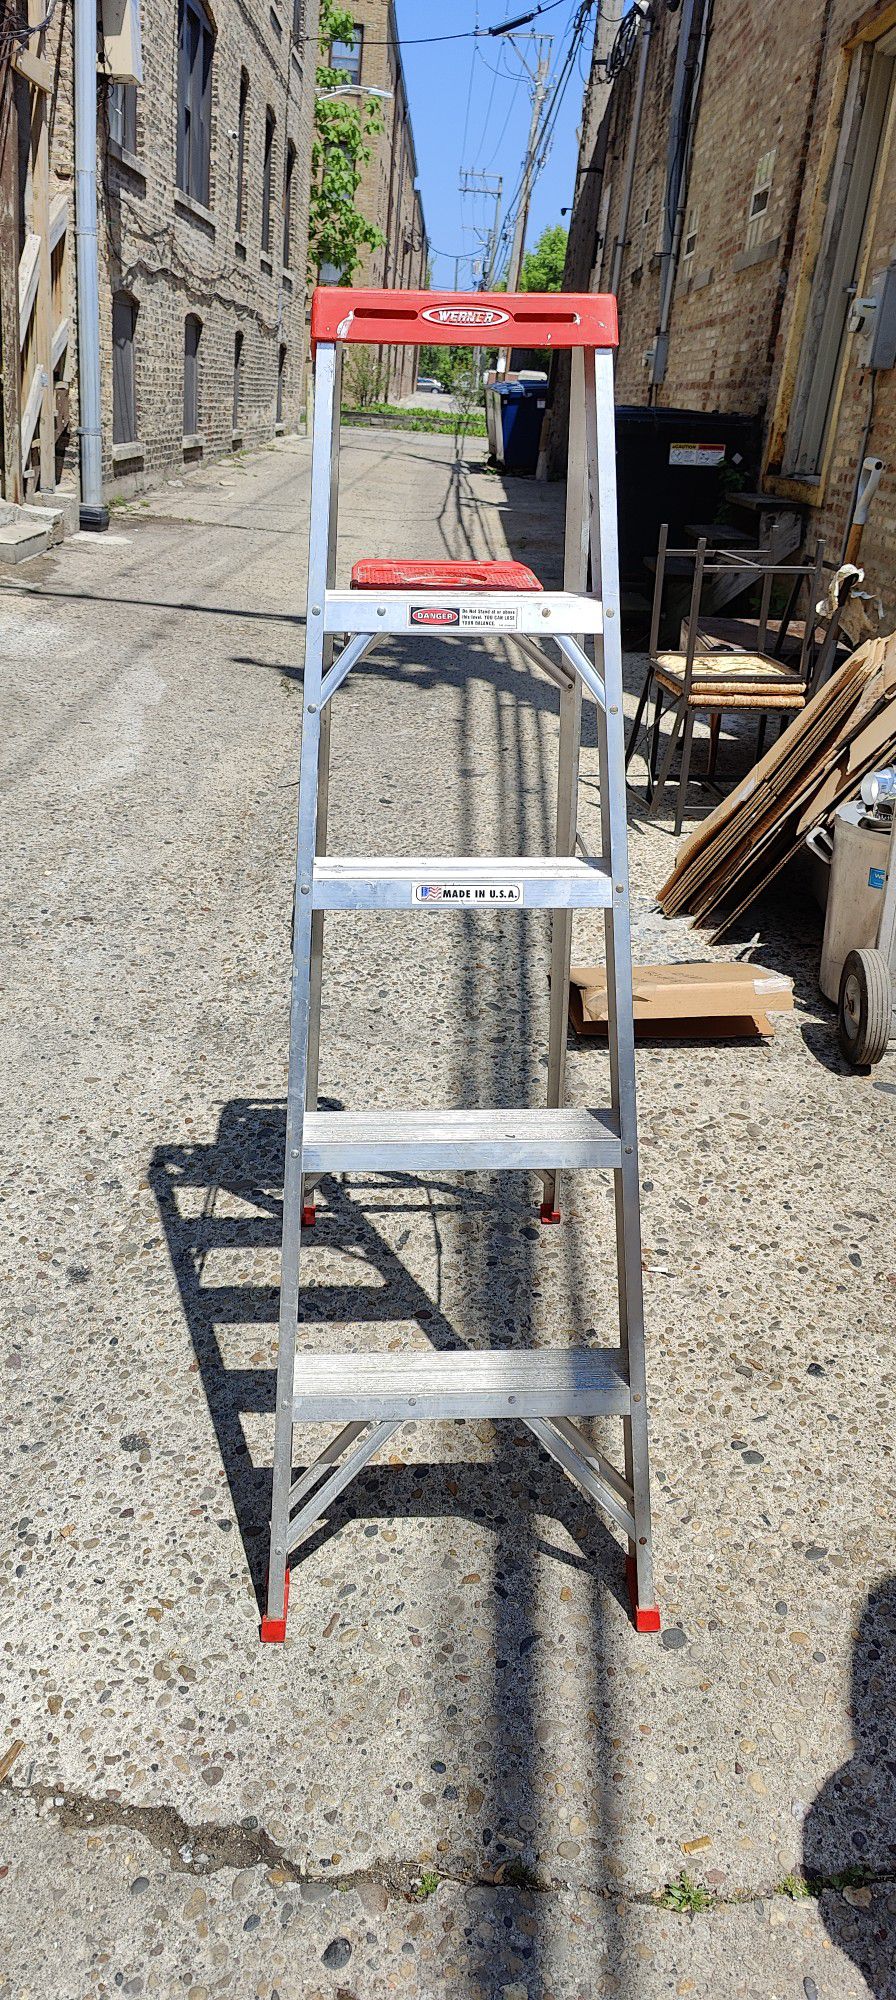 Werner 5' Aluminum Step Ladder